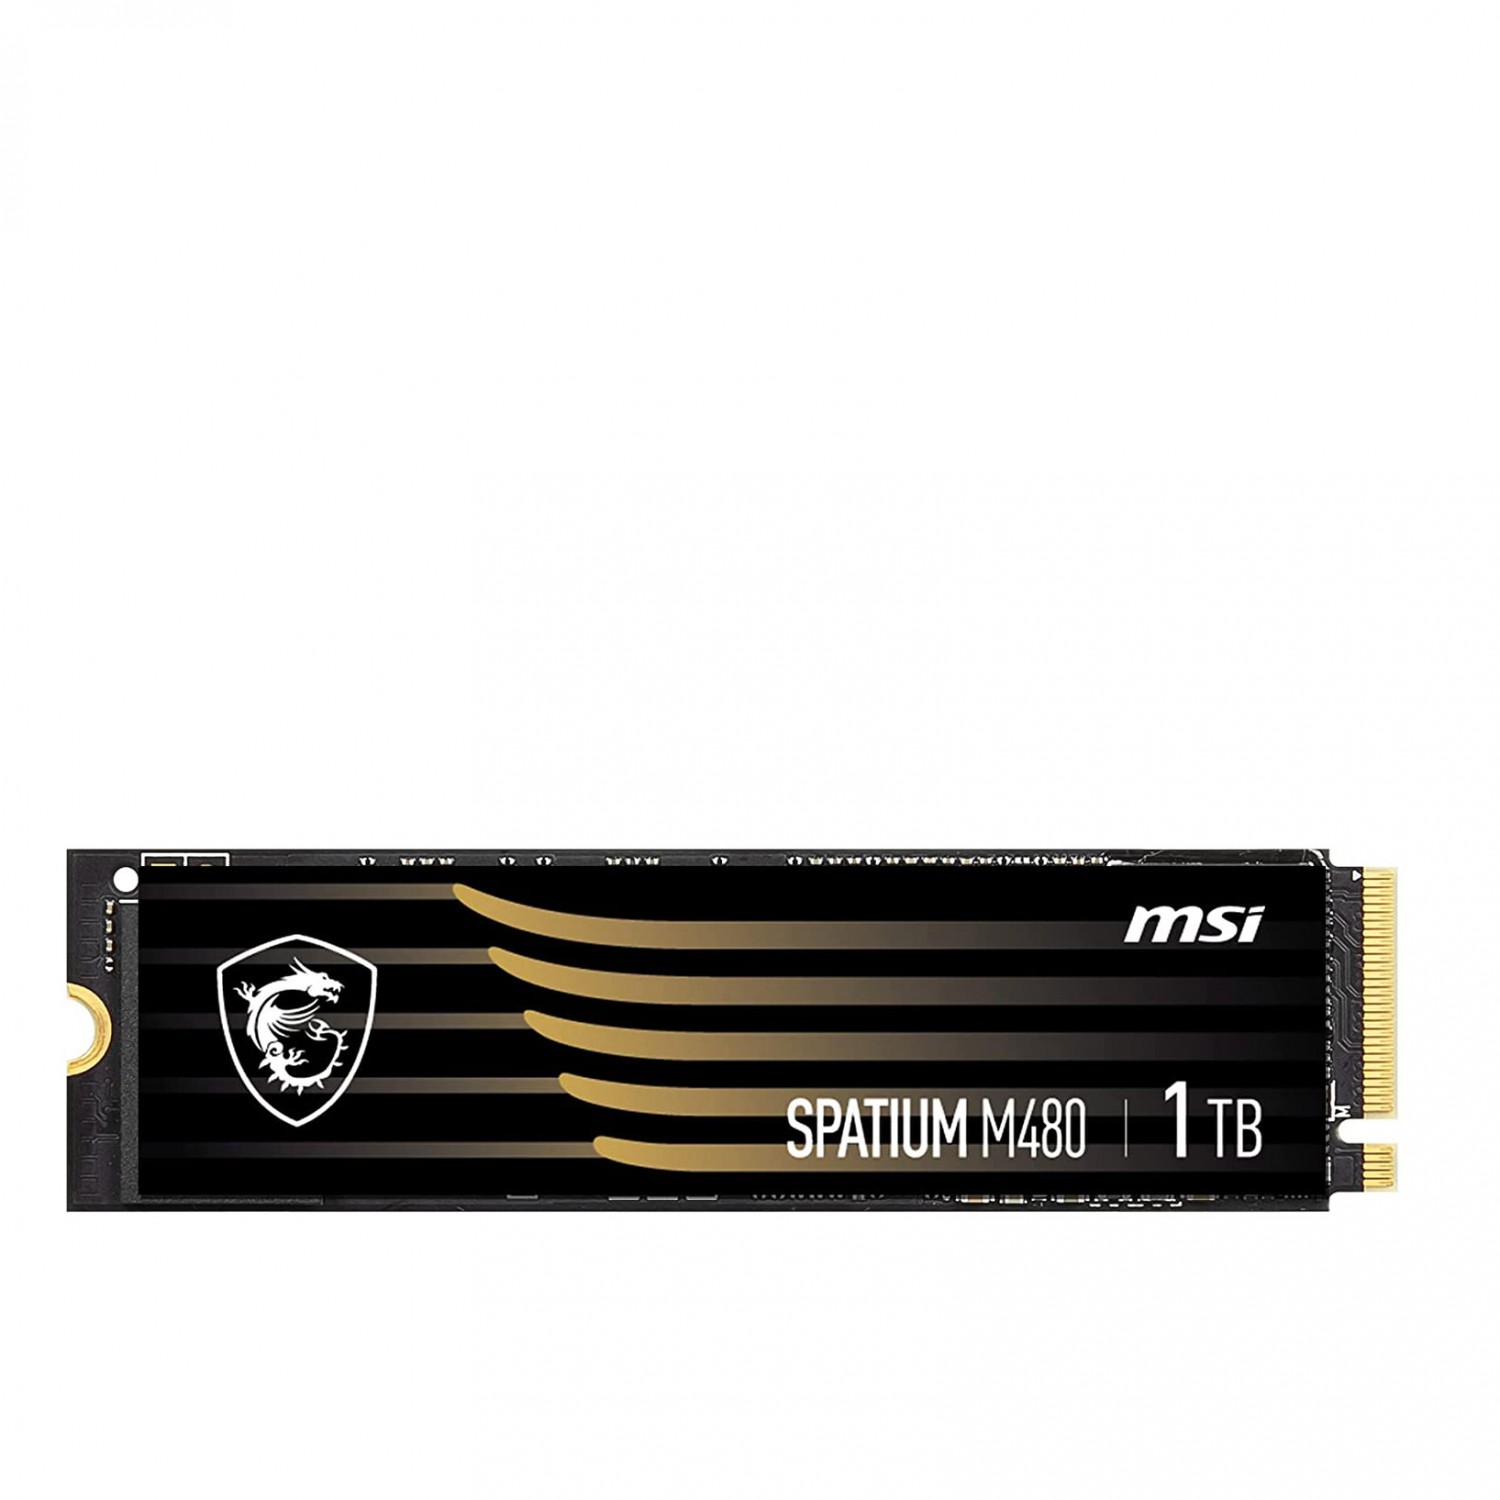 حافظه اس اس دی MSI Spatium M480 1TB-1